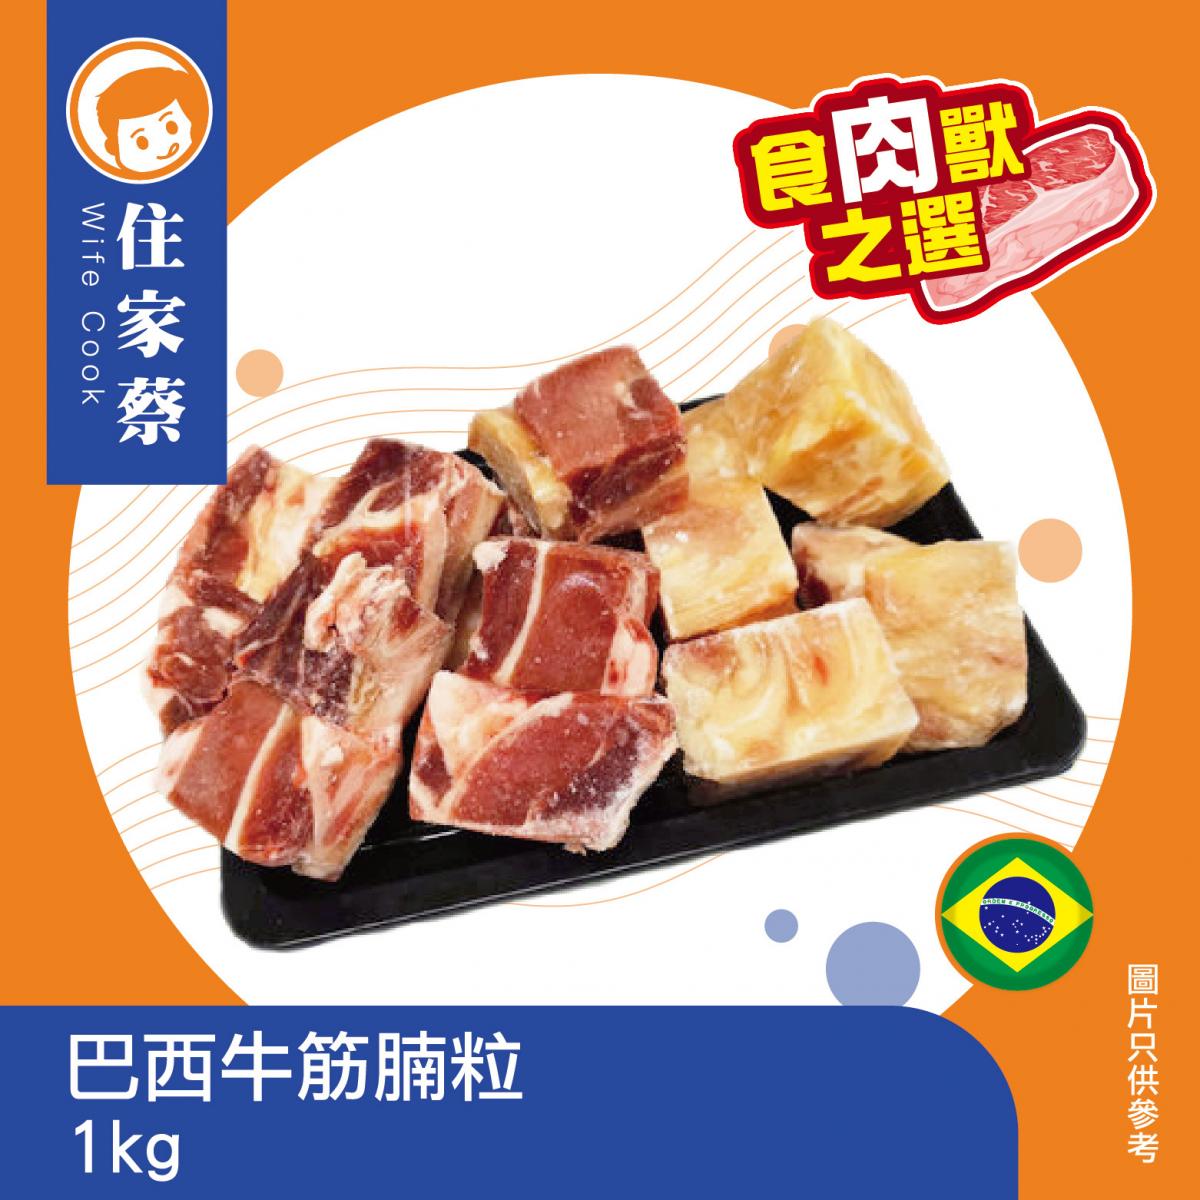 Brazil Burdock & Beef Root 1kg (forzen-18°C) 巴西牛筋腩粒